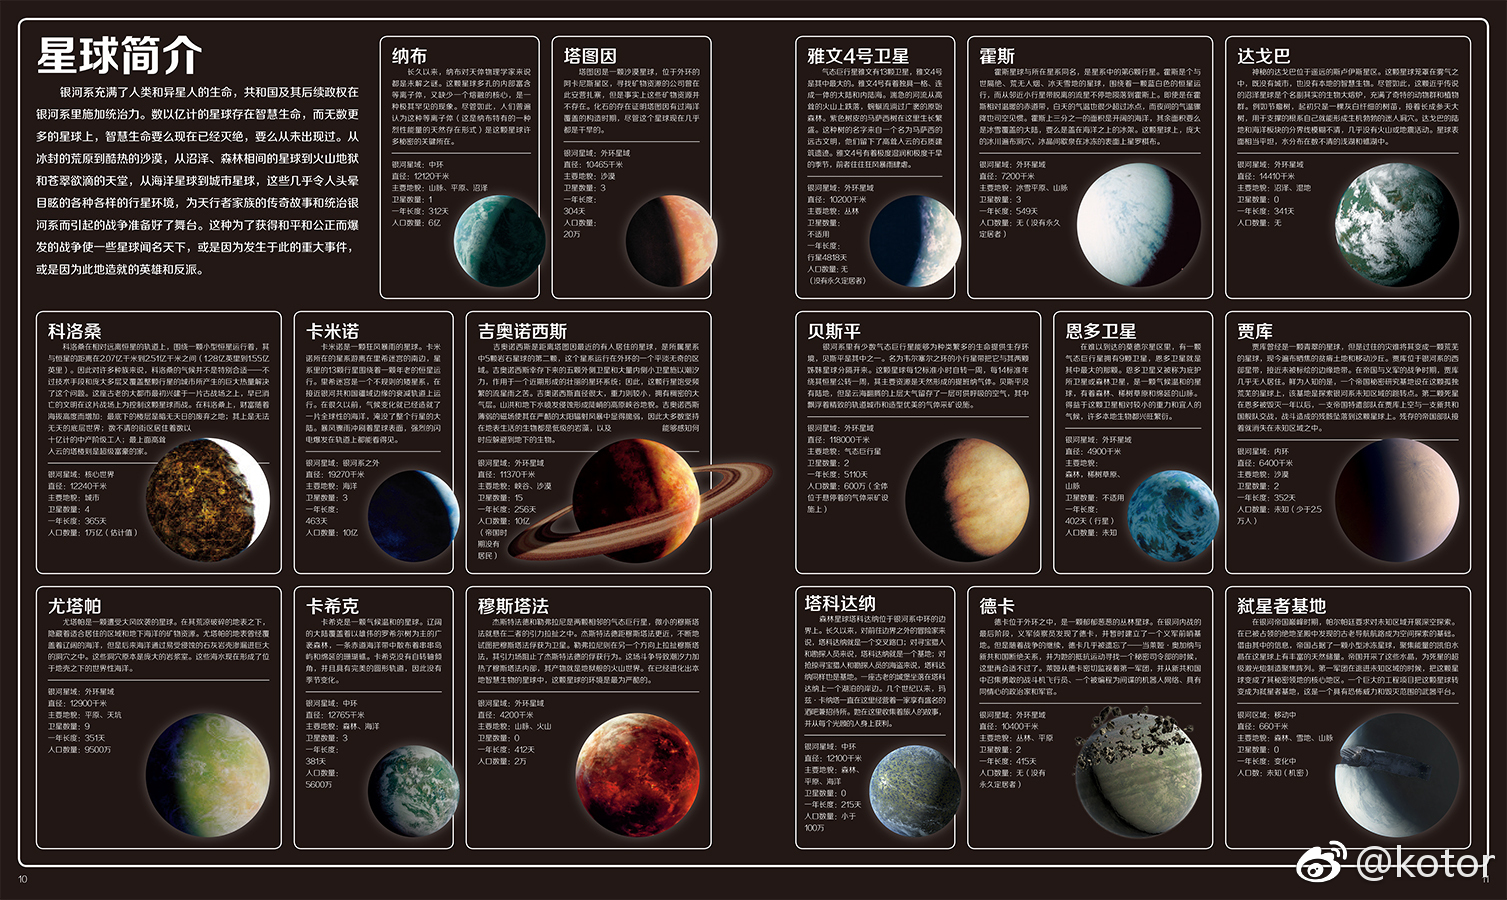 《星球大战》正史参考书《完全名景图解》简体中文版上市